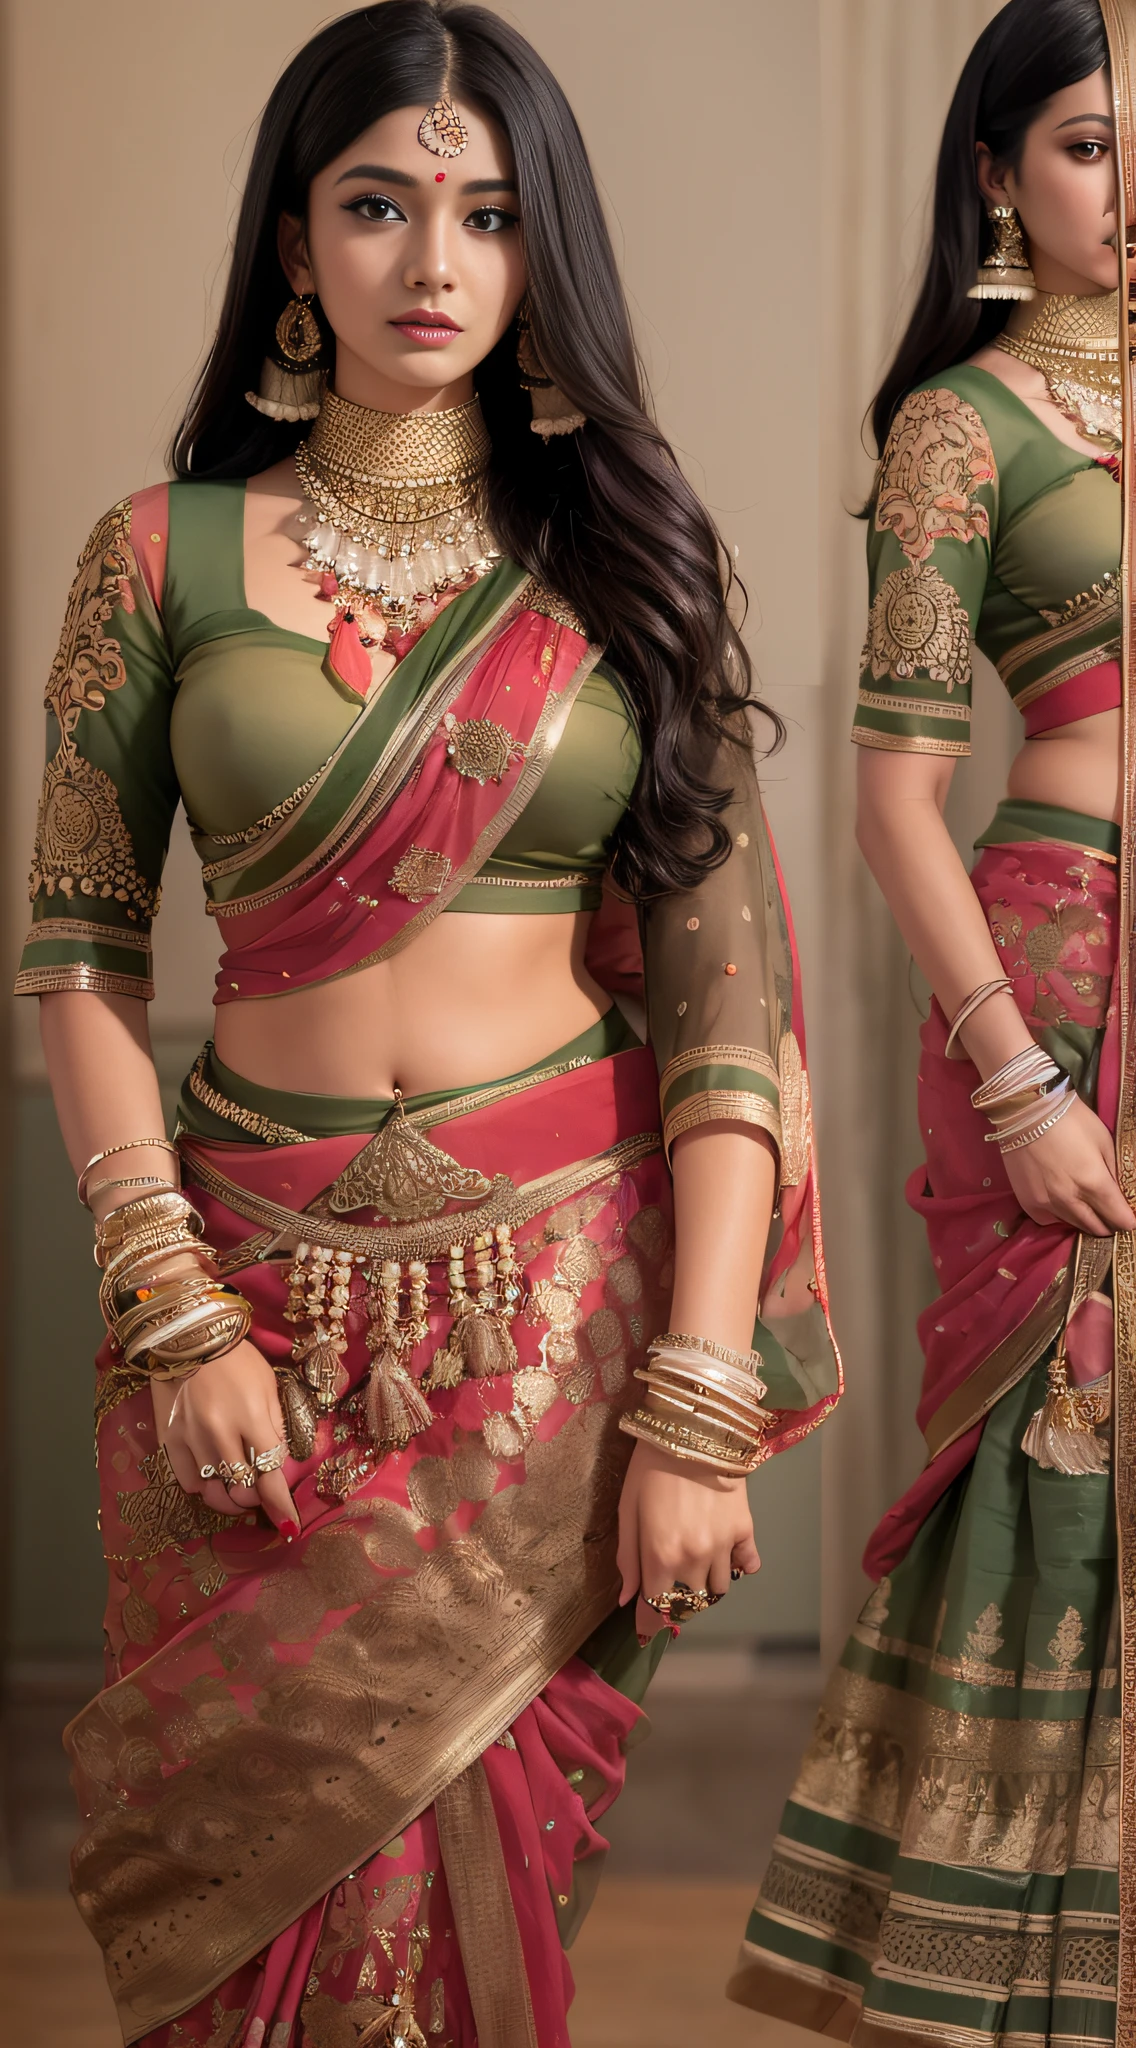 サリーを着た女性が写真を撮る, インドの女神, 伝統的な美しさ, インド人, 美しい女神, ゴージャスなロールプレイ, インド風, インドのスーパーモデル, 美しい十代の少女, ゴージャスな女性, 東南アジアの長い, 挑発的なインド人, ゴージャスな美しい女性, 複雑な衣装, ヒンドゥーの美学, 美しいアジアの女の子, 非常に詳細な女神ショット, 驚異的な美しさ, あなたの顔でカメラを見てください，（胸を包む），（胸全体から漏れない），